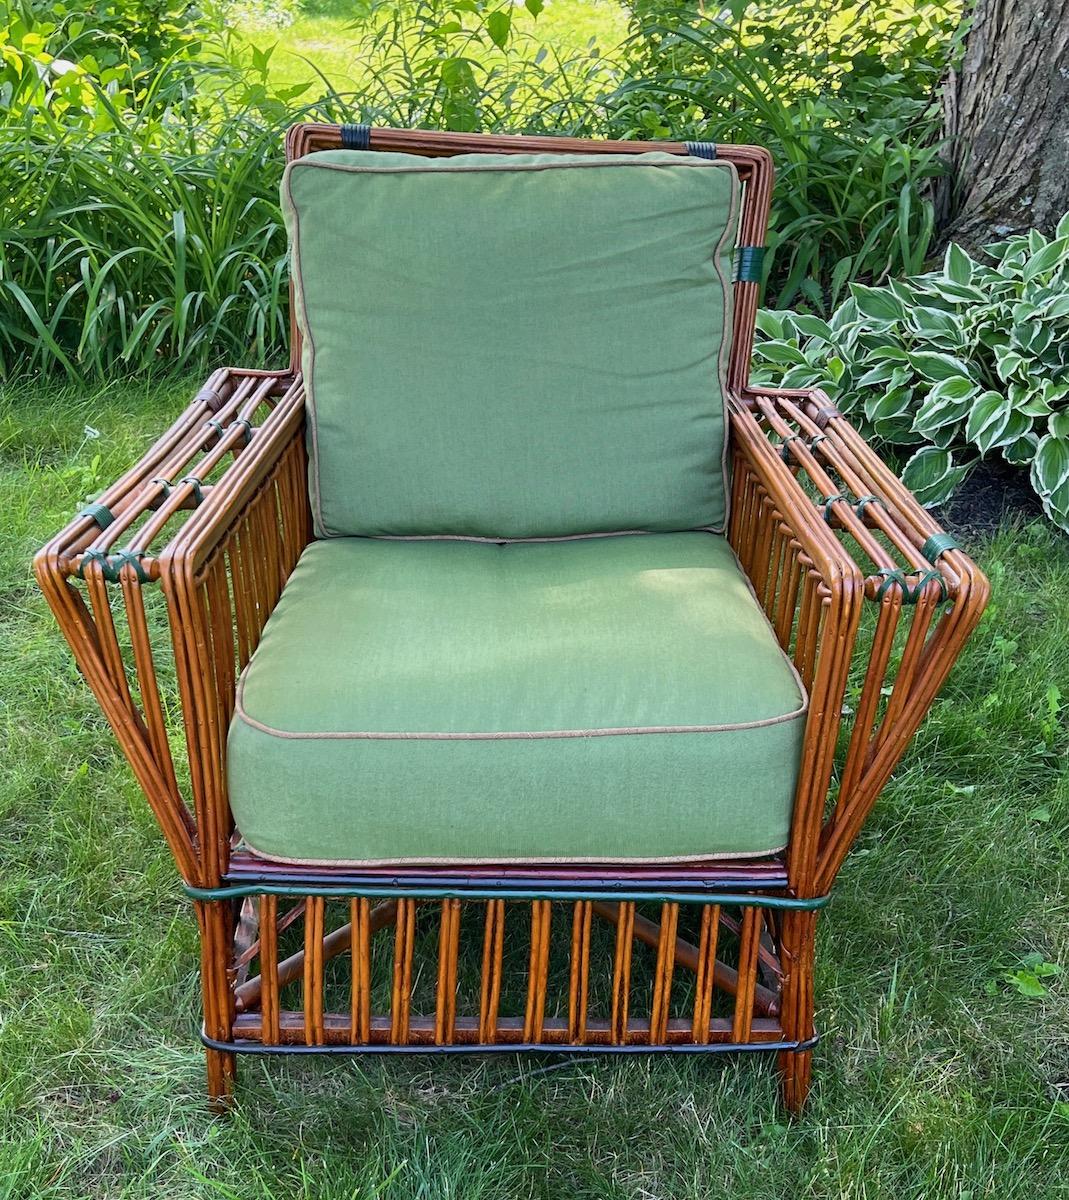 Antique, belle et élégante chaise à bras en rotin en finition naturelle avec des garnitures colorées, American,C.C. 1929. Ce style de mobilier était aussi souvent appelé osier à bâtons ou roseau fendu. Les goûts des consommateurs évoluent vers un